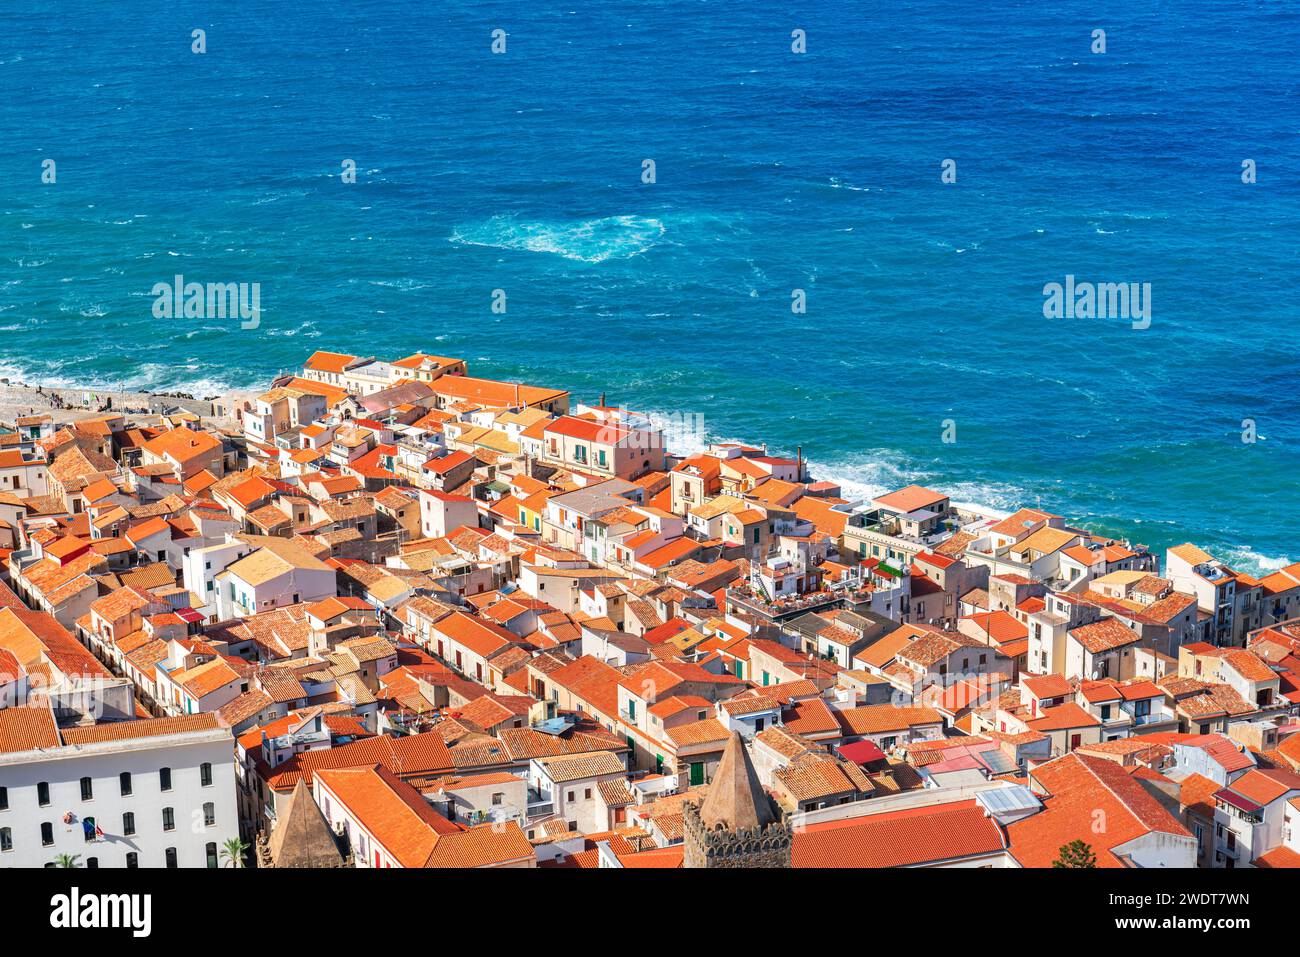 Das alte Fischerdorf Cefalu mit roten Dächern und weißen Häusern von oben gesehen, Provinz Palermo, Tyrrhenische Meer, Sizilien, Italien, Mittelmeer Stockfoto